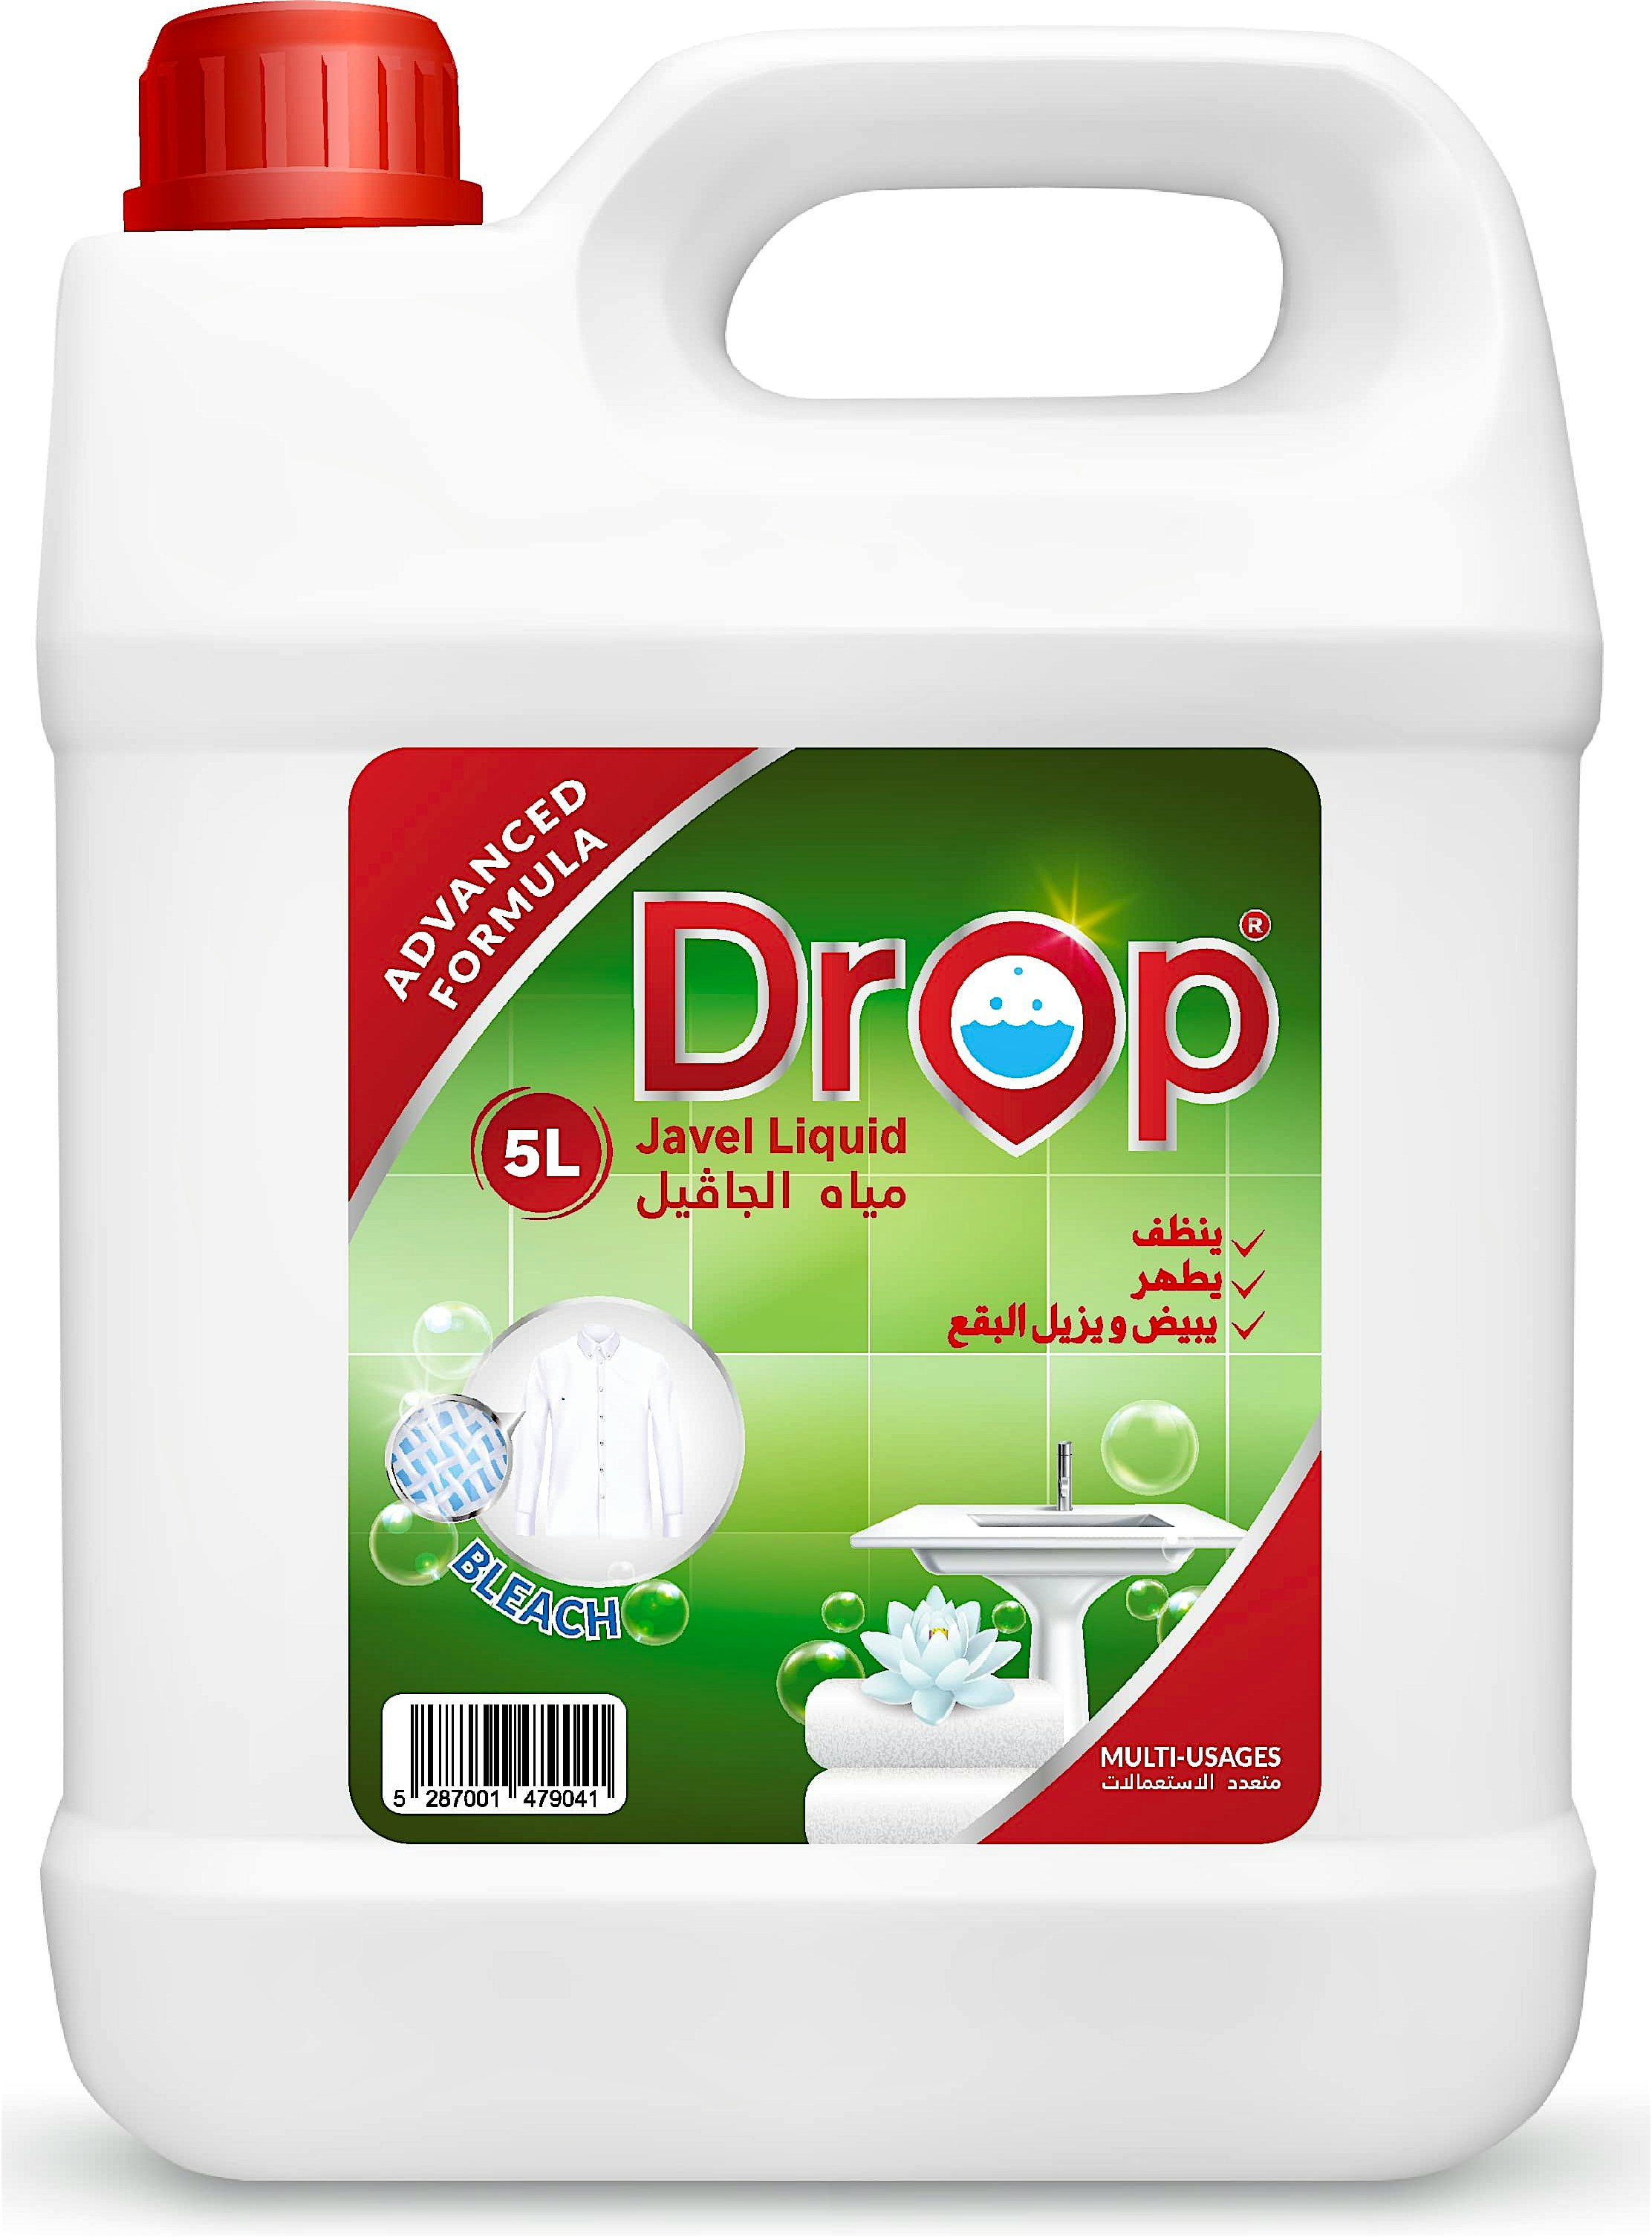 Drop Javel Liquid 5 L